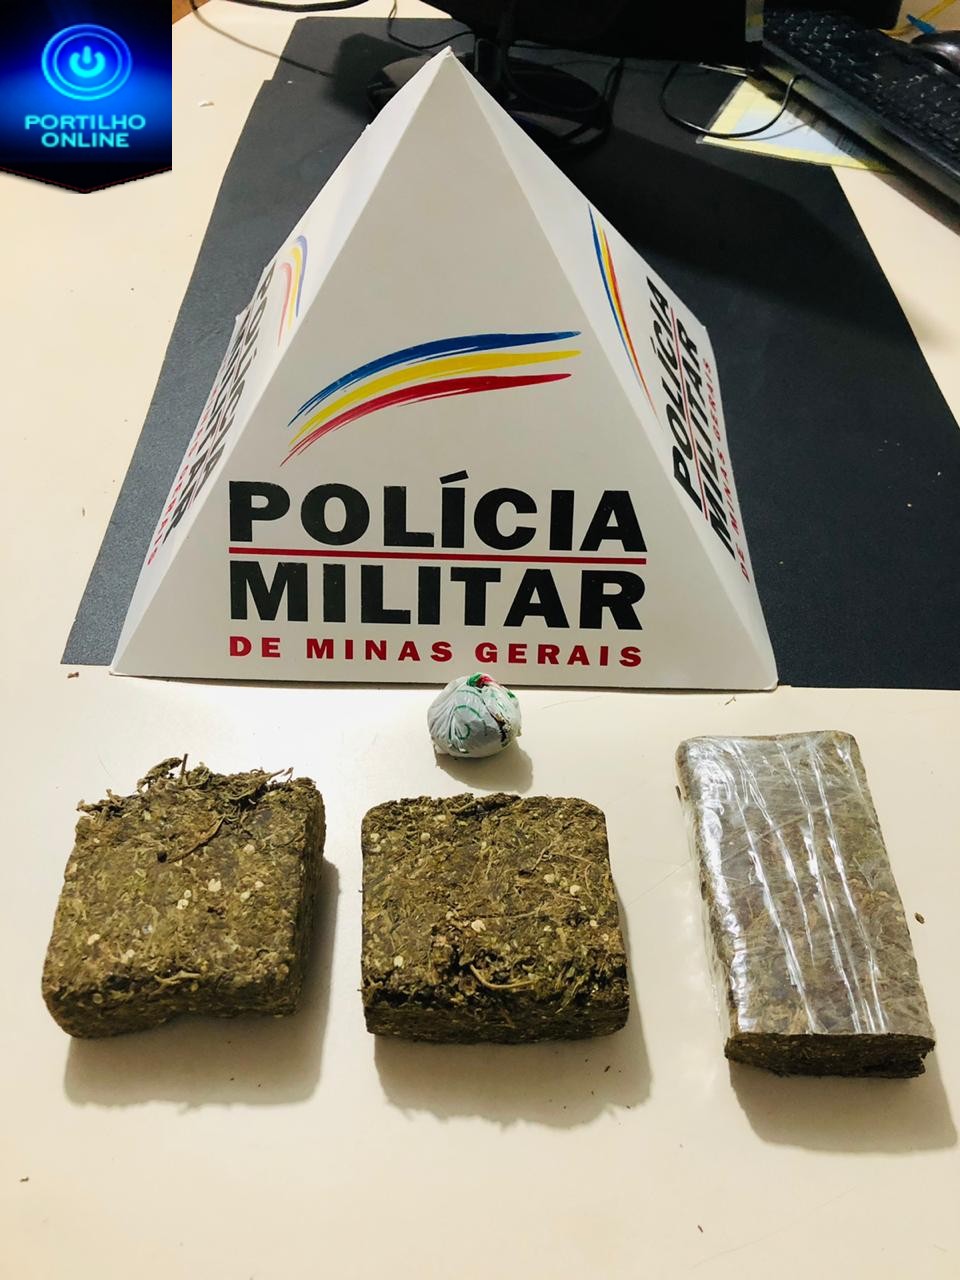 GUIMARÂNIA  – Polícia Militar apreende menor por tráfico ilícito de drogas.🙄😳😡🚓🚔🚨🤔⛓👨‍✈️👩‍✈️ OCORRÊNCIAS DE DESTAQUE REGISTRADA NA ÁREA DO 46º BPM PATROCÍNIO.